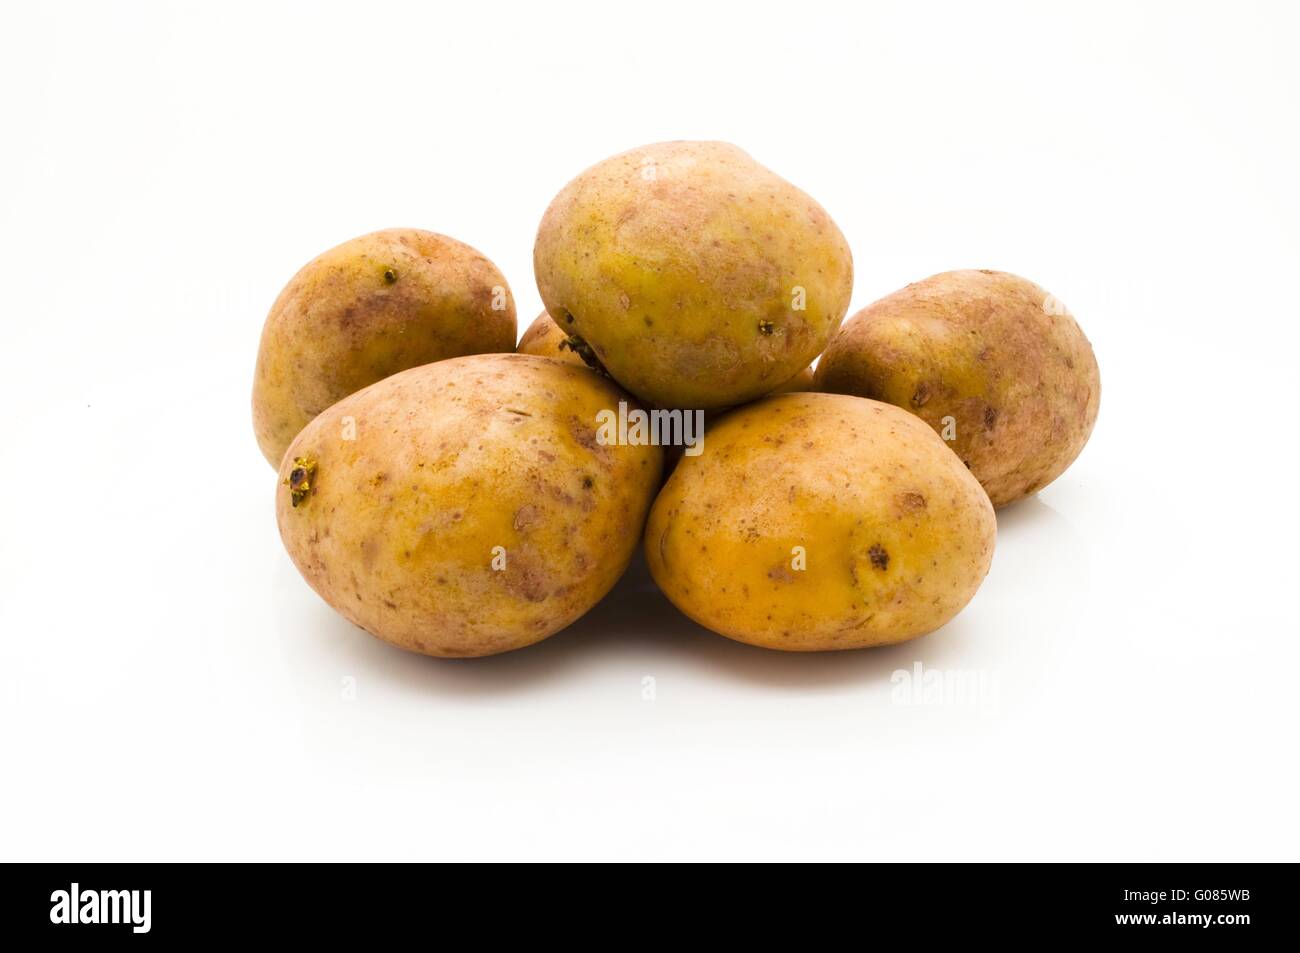 Raw potato Stock Photo